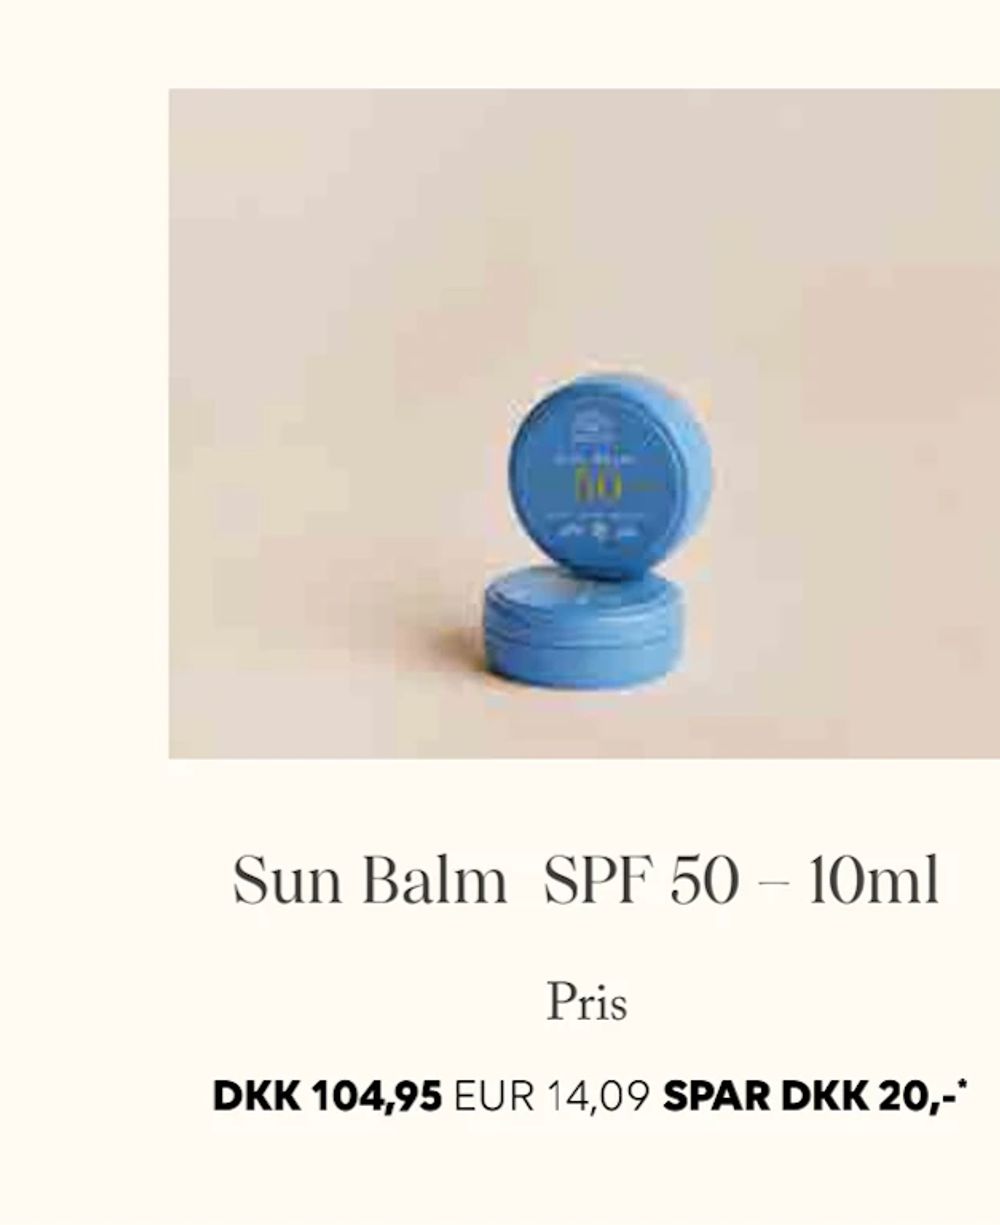 Erbjudanden på Sun Balm SPF 50 – 10ml från Scandlines Travel Shop för 14,09 €